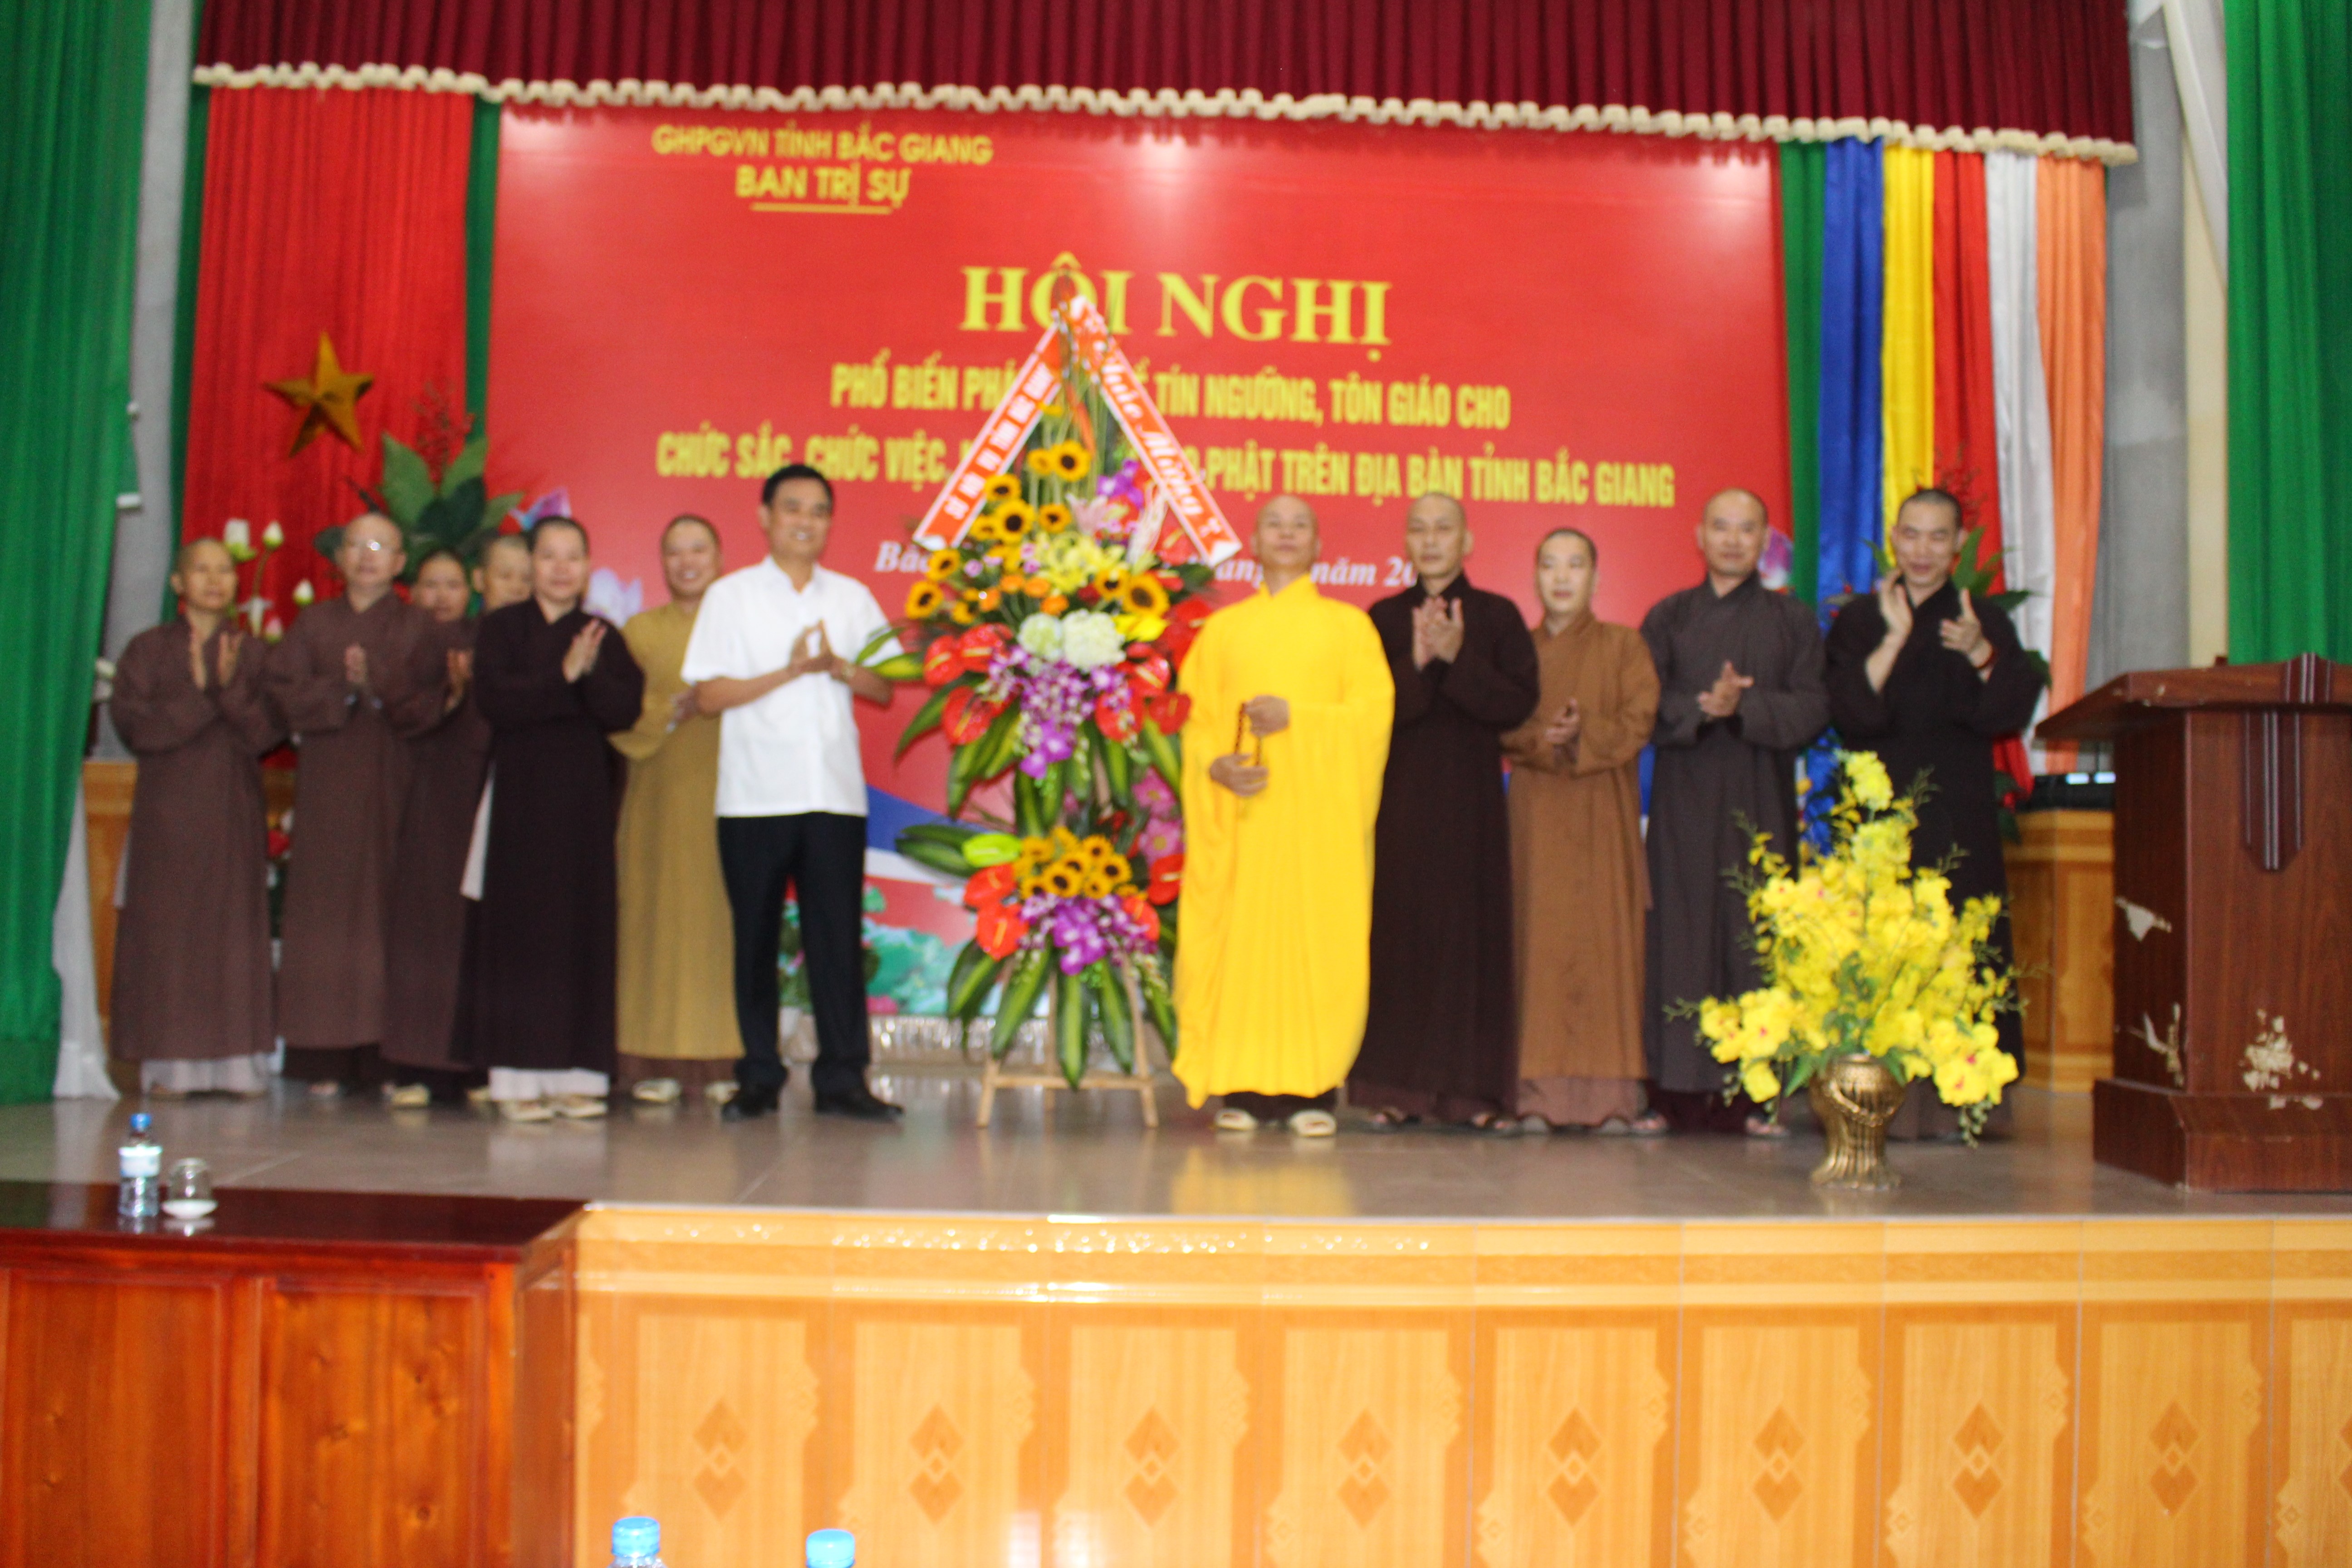 Giáo Hội Phật giáo Việt Nam tỉnh Bắc Giang tổ chức Hội nghị tuyên truyền, phổ biến Luật tín ngưỡng, tôn giáo năm 2017.